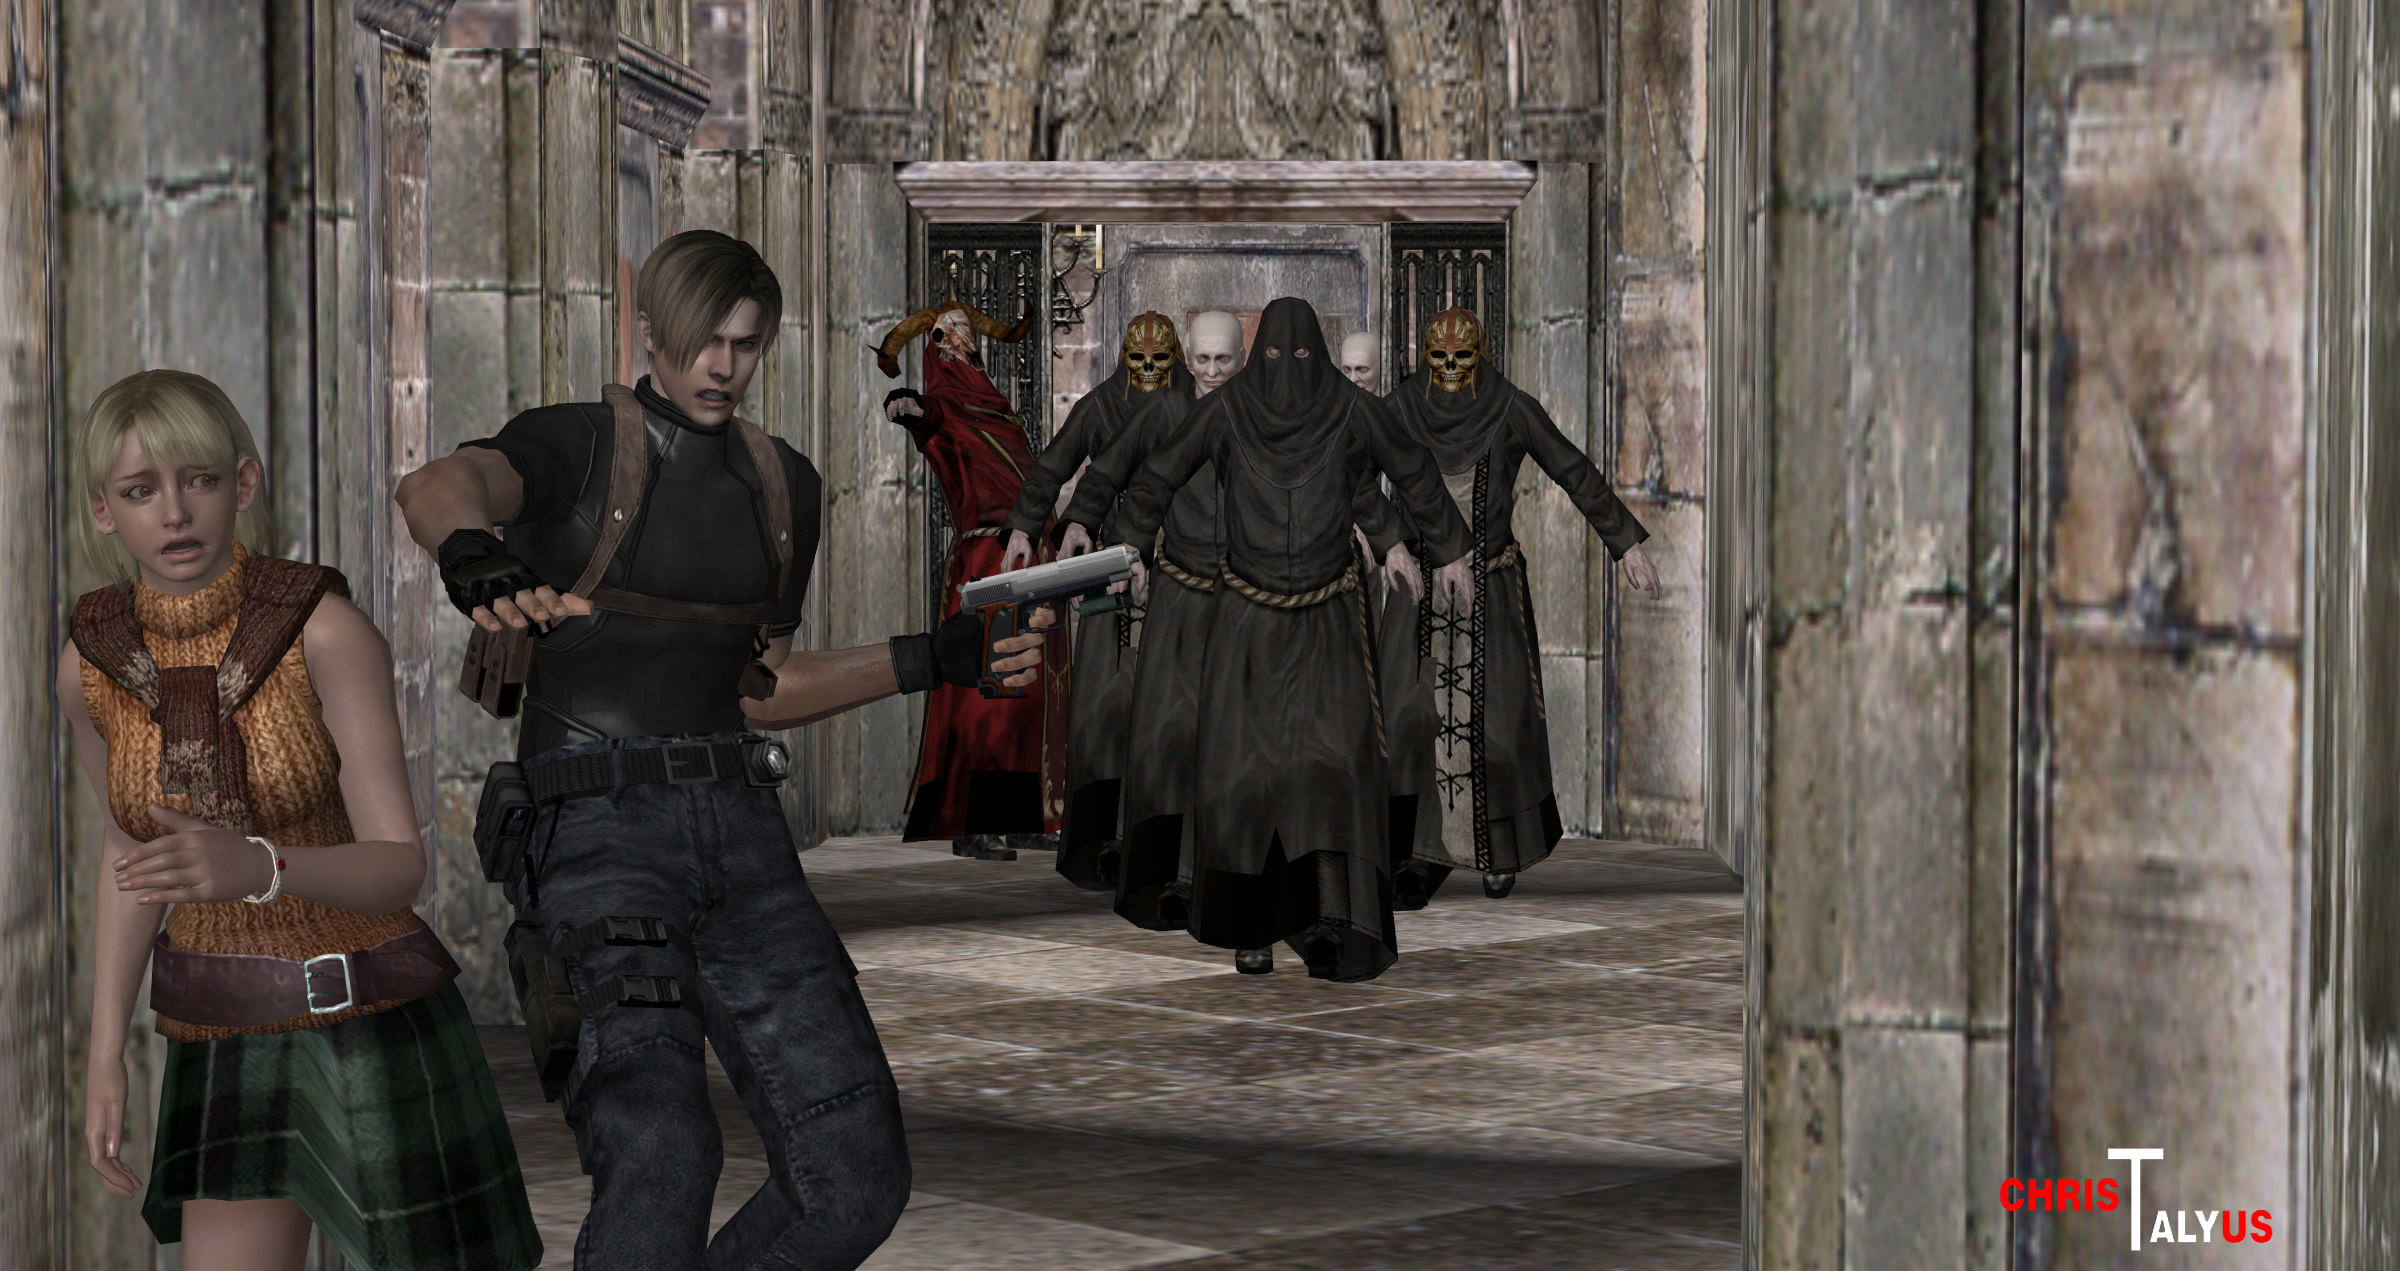 Resident Evil4 Remake Village[3] by Bowu on DeviantArt